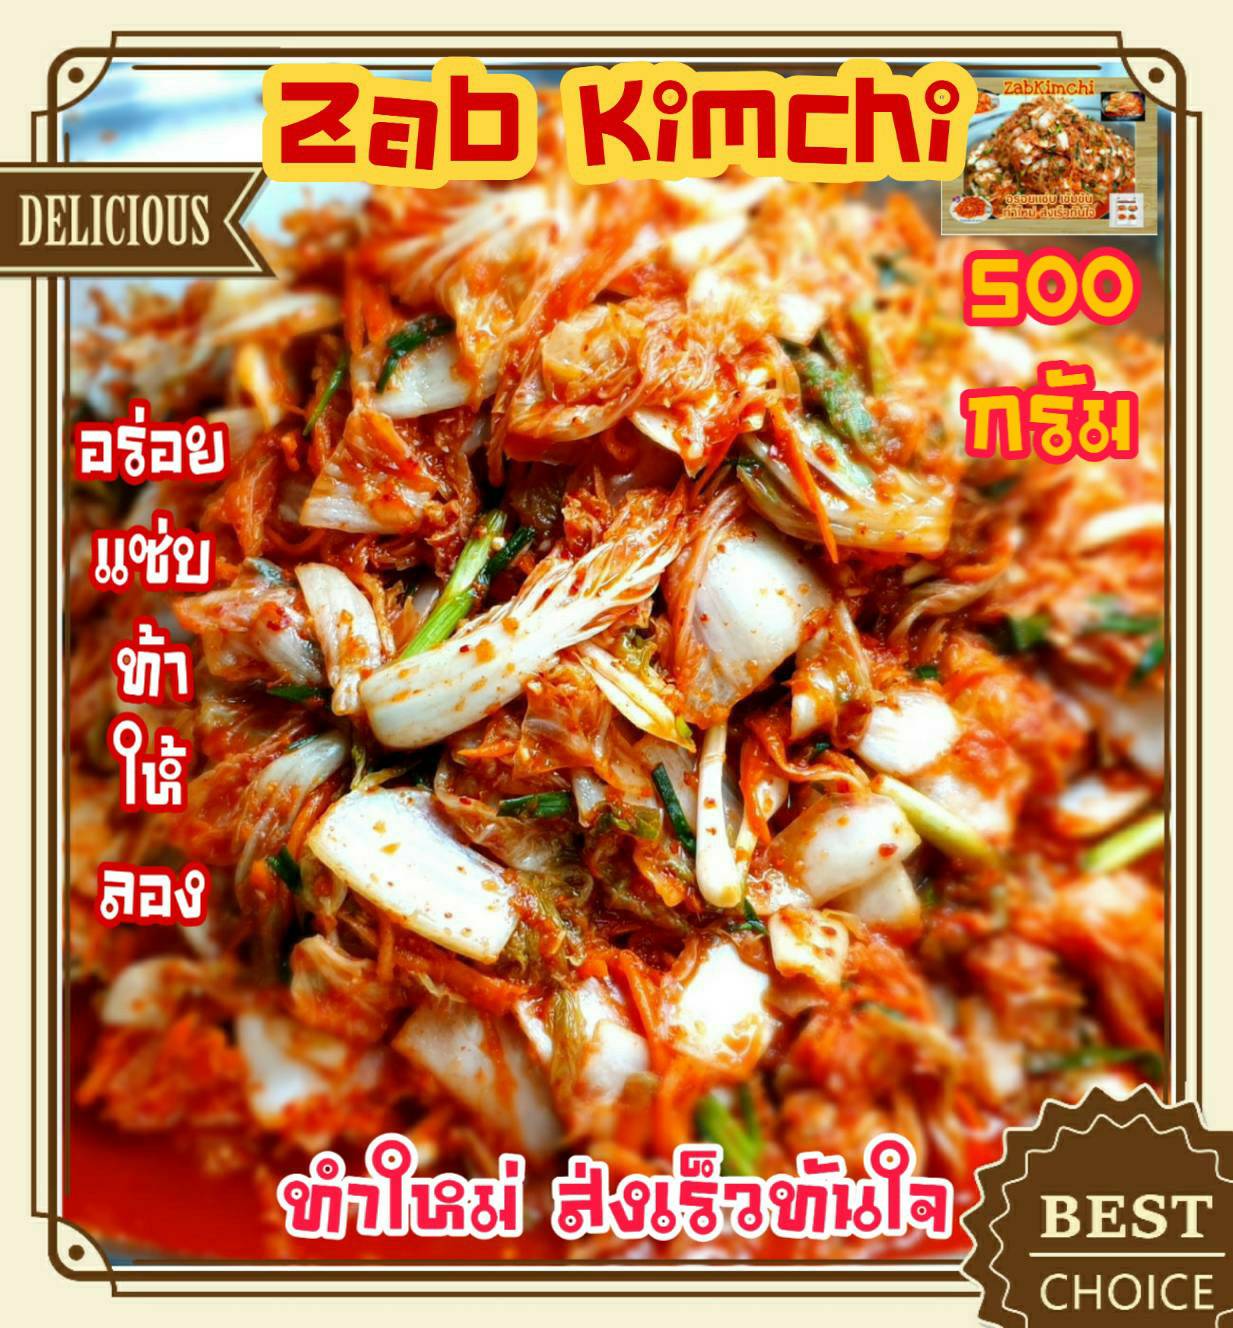 กิมจิ กิมจิผักกาดขาว 500 g. อร่อย แซ่บ ท้าให้ลอง Homemade Kimchi กิมจิเกาหลี กิมจิผักกาดขาว กิมจิเห็ด กิมจิโพกิ กิมจิต้นหอม กิมจิโฮมเมด